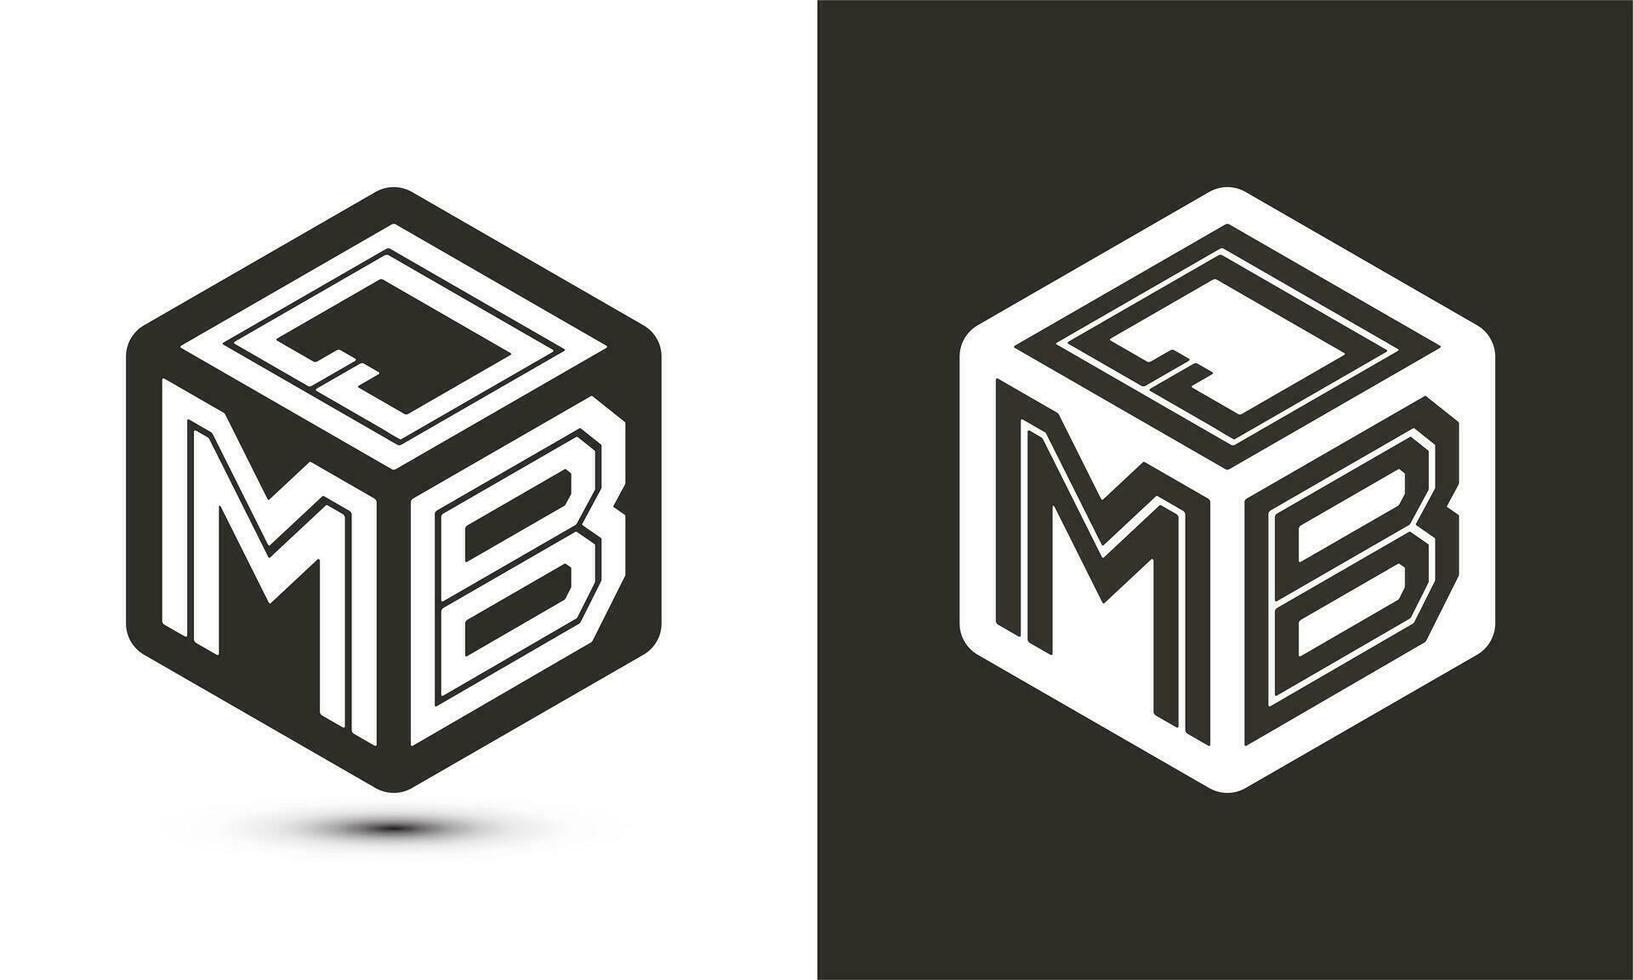 qmb brief logo ontwerp met illustrator kubus logo, vector logo modern alfabet doopvont overlappen stijl.